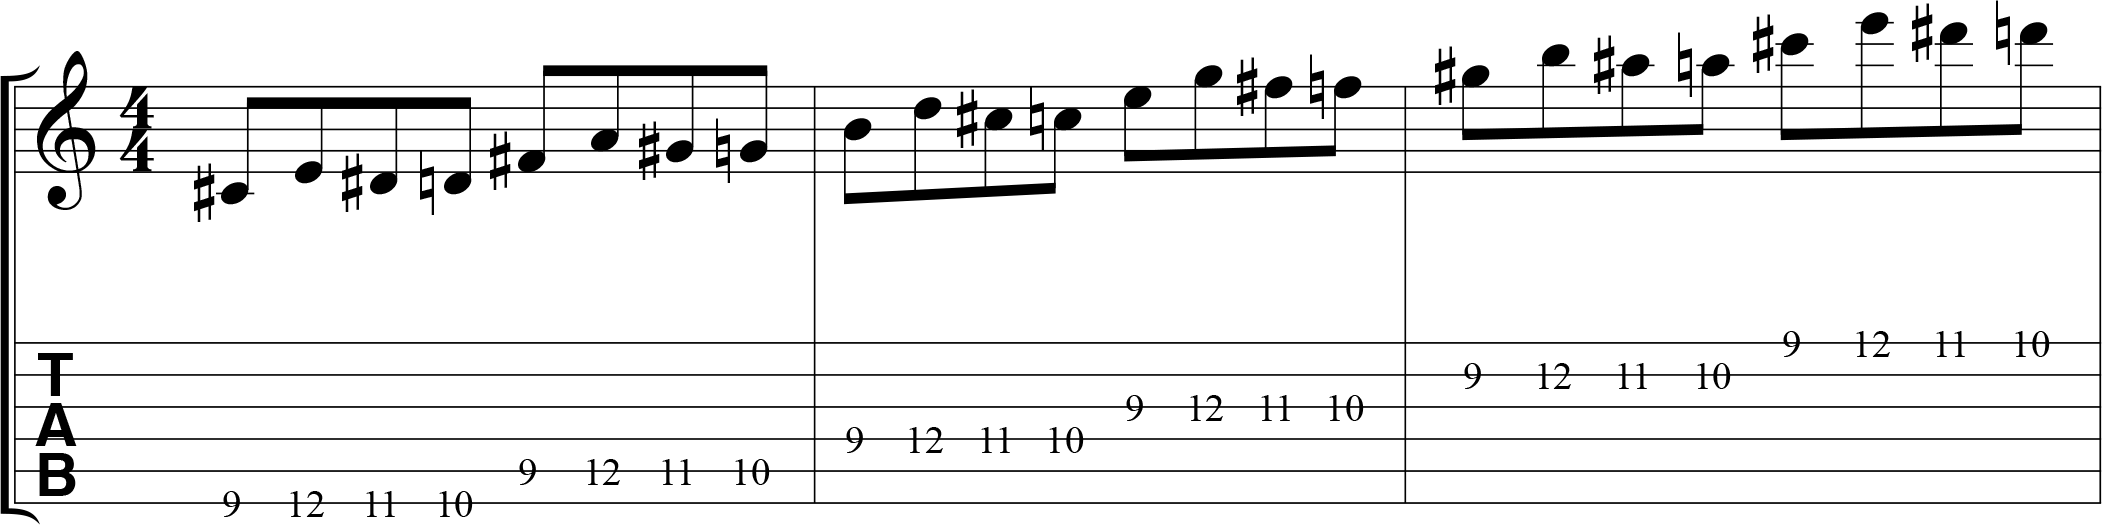 Chromatic alternate picking exercise for guitar, 1432, ascending.